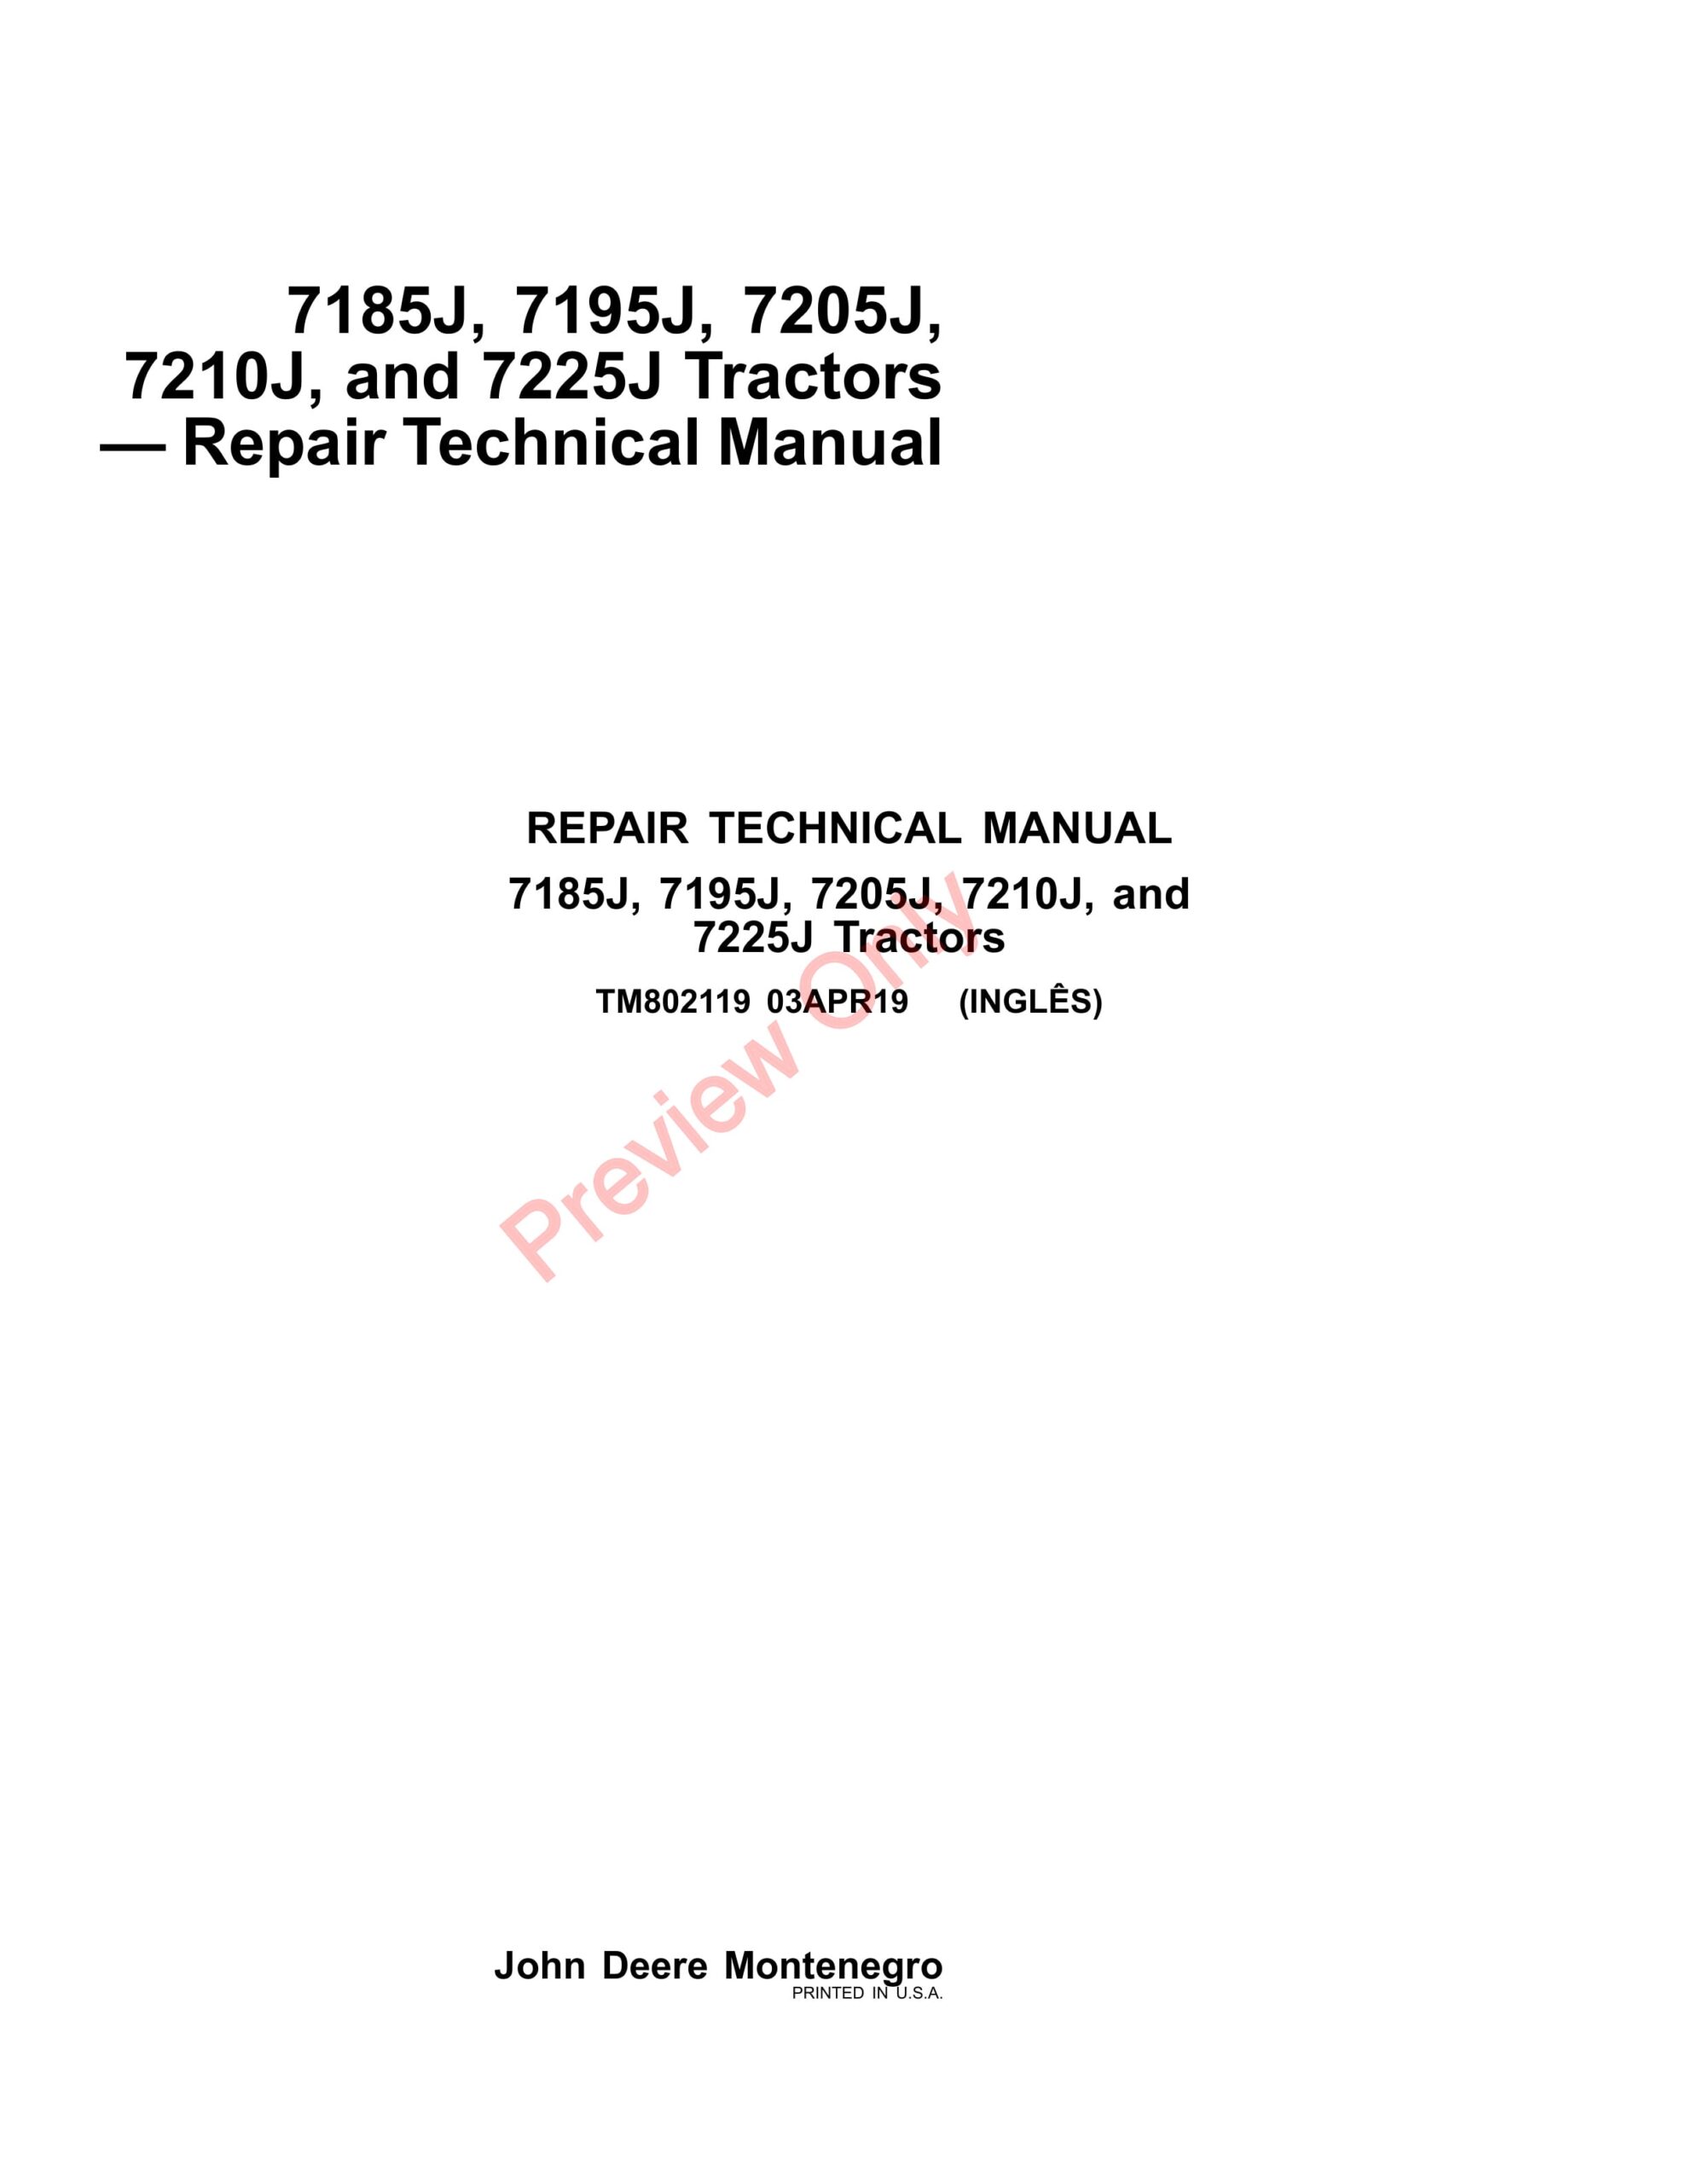 John Deere 7185J, 7195J, 7205J, 7210J, and 7225J Tractors Repair Technical Manual TM802119 03APR19-1